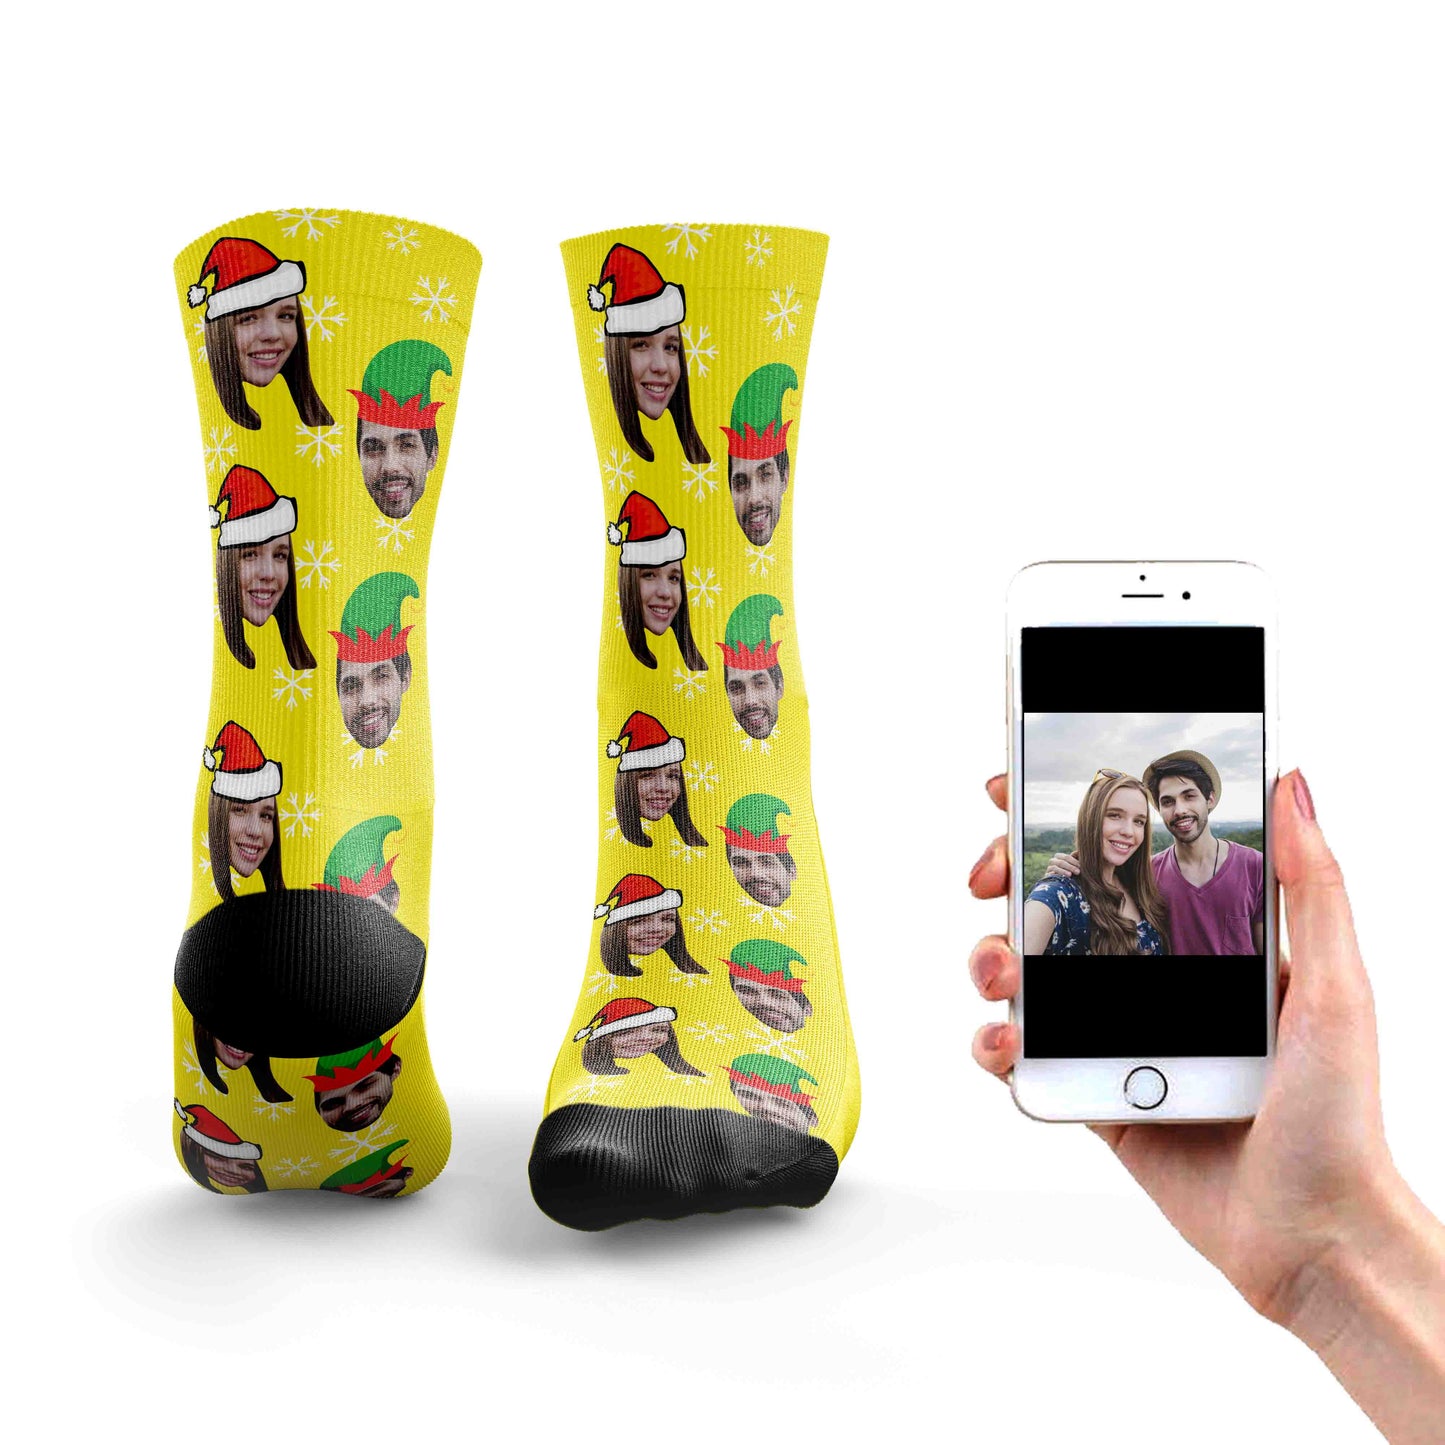 
                  
                    Couples Christmas Socks
                  
                